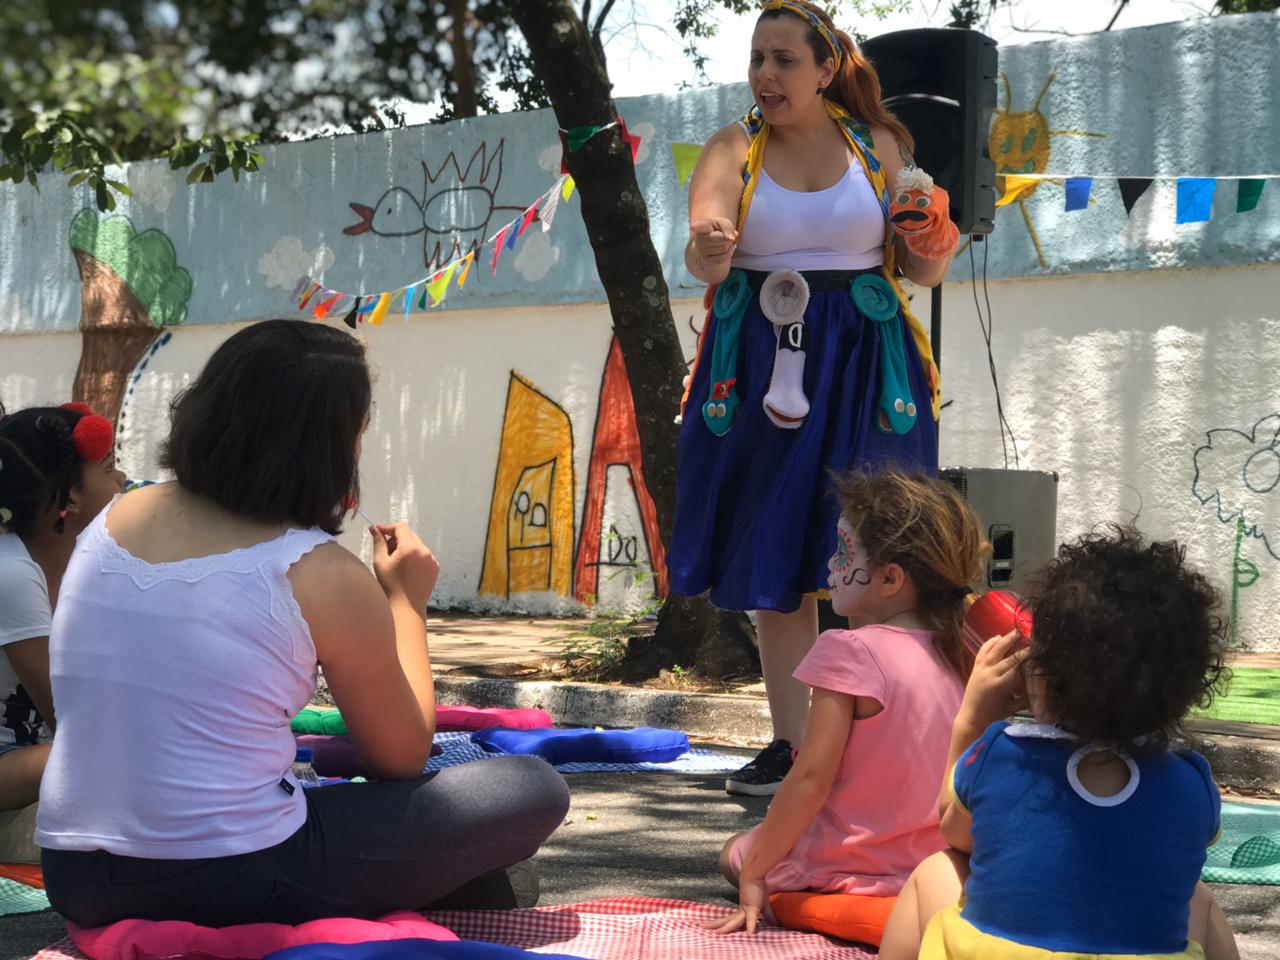 Artista com vestimenta colorida atraia público infantil e adulto sentado entre almofadas